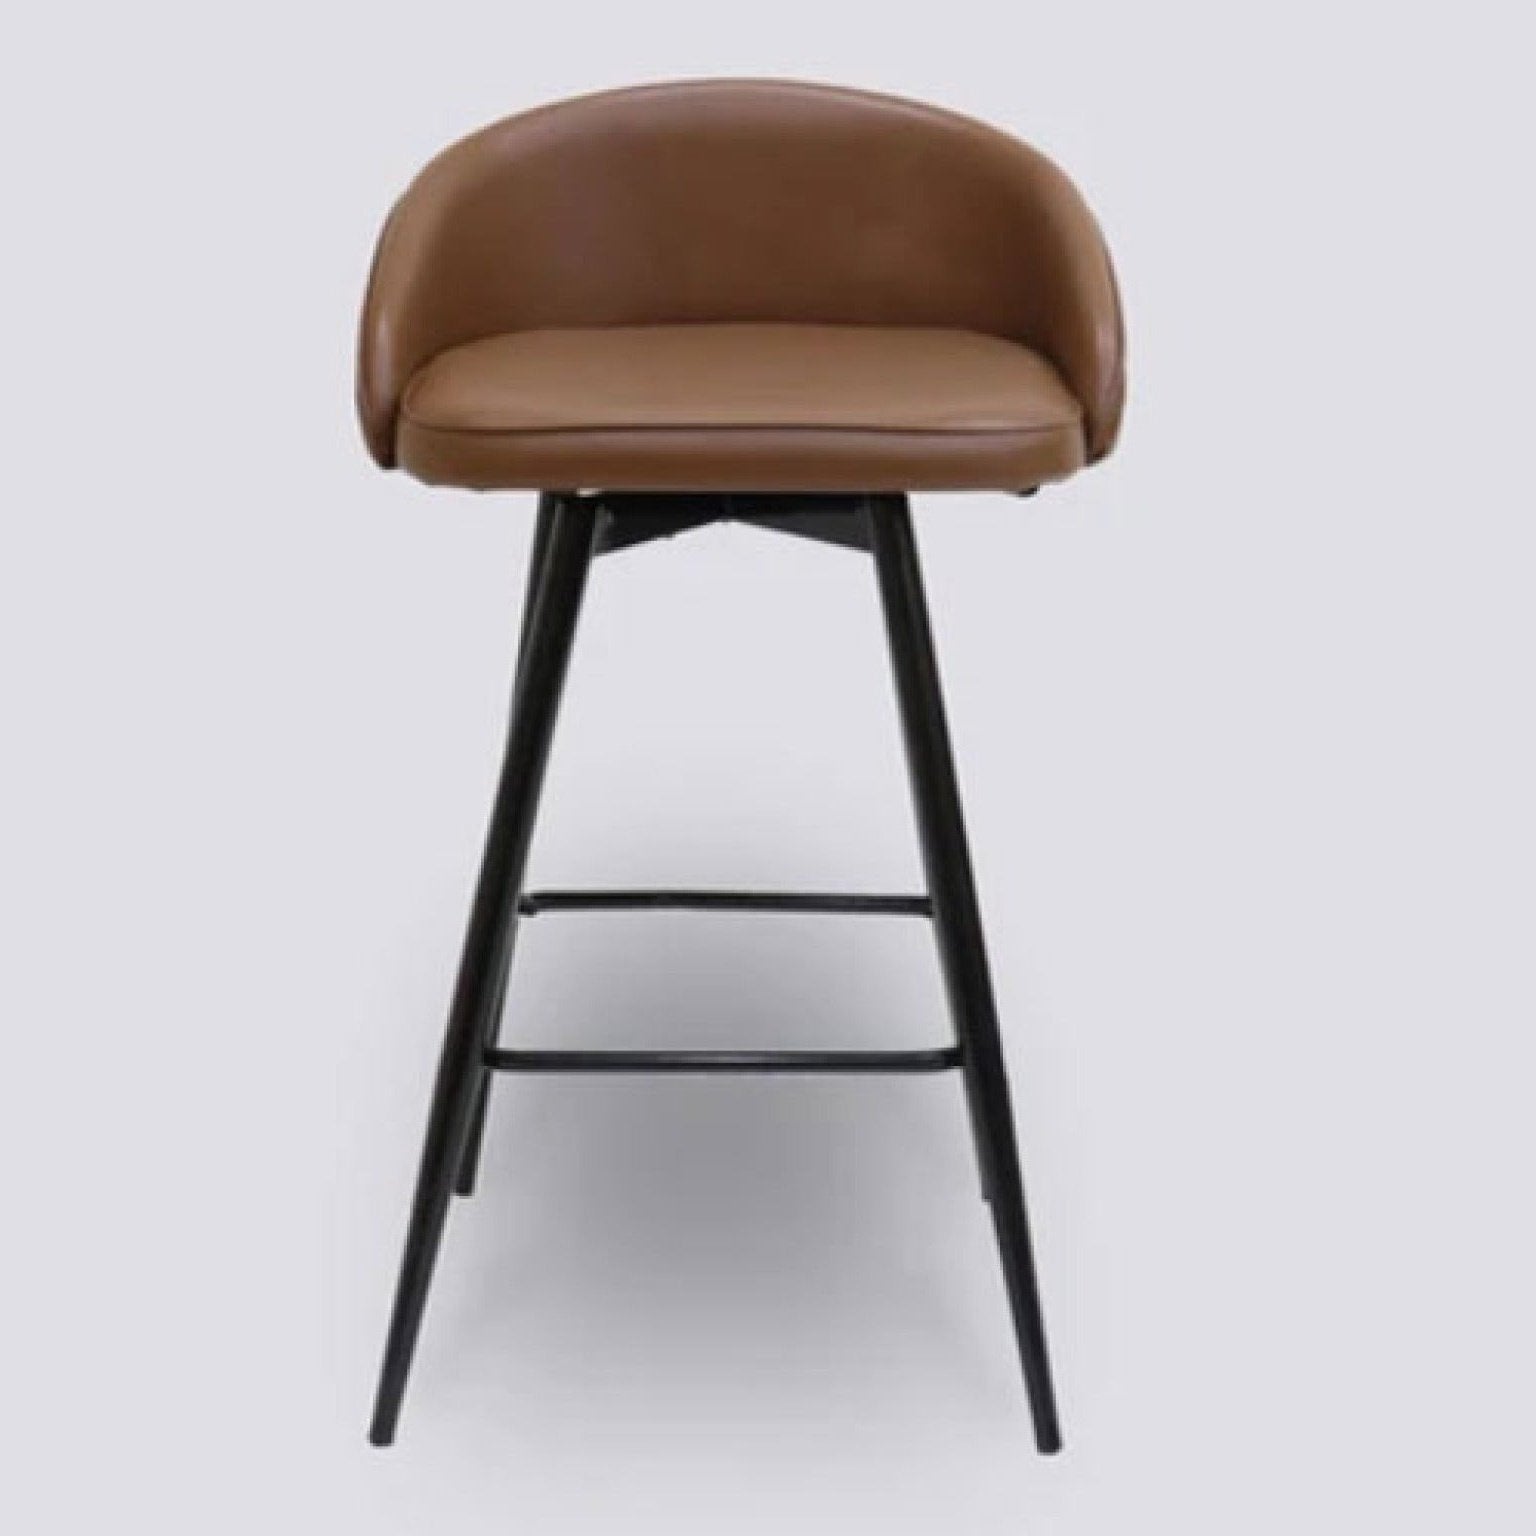 LUX-632 BAR STOOL Mobel Furniture